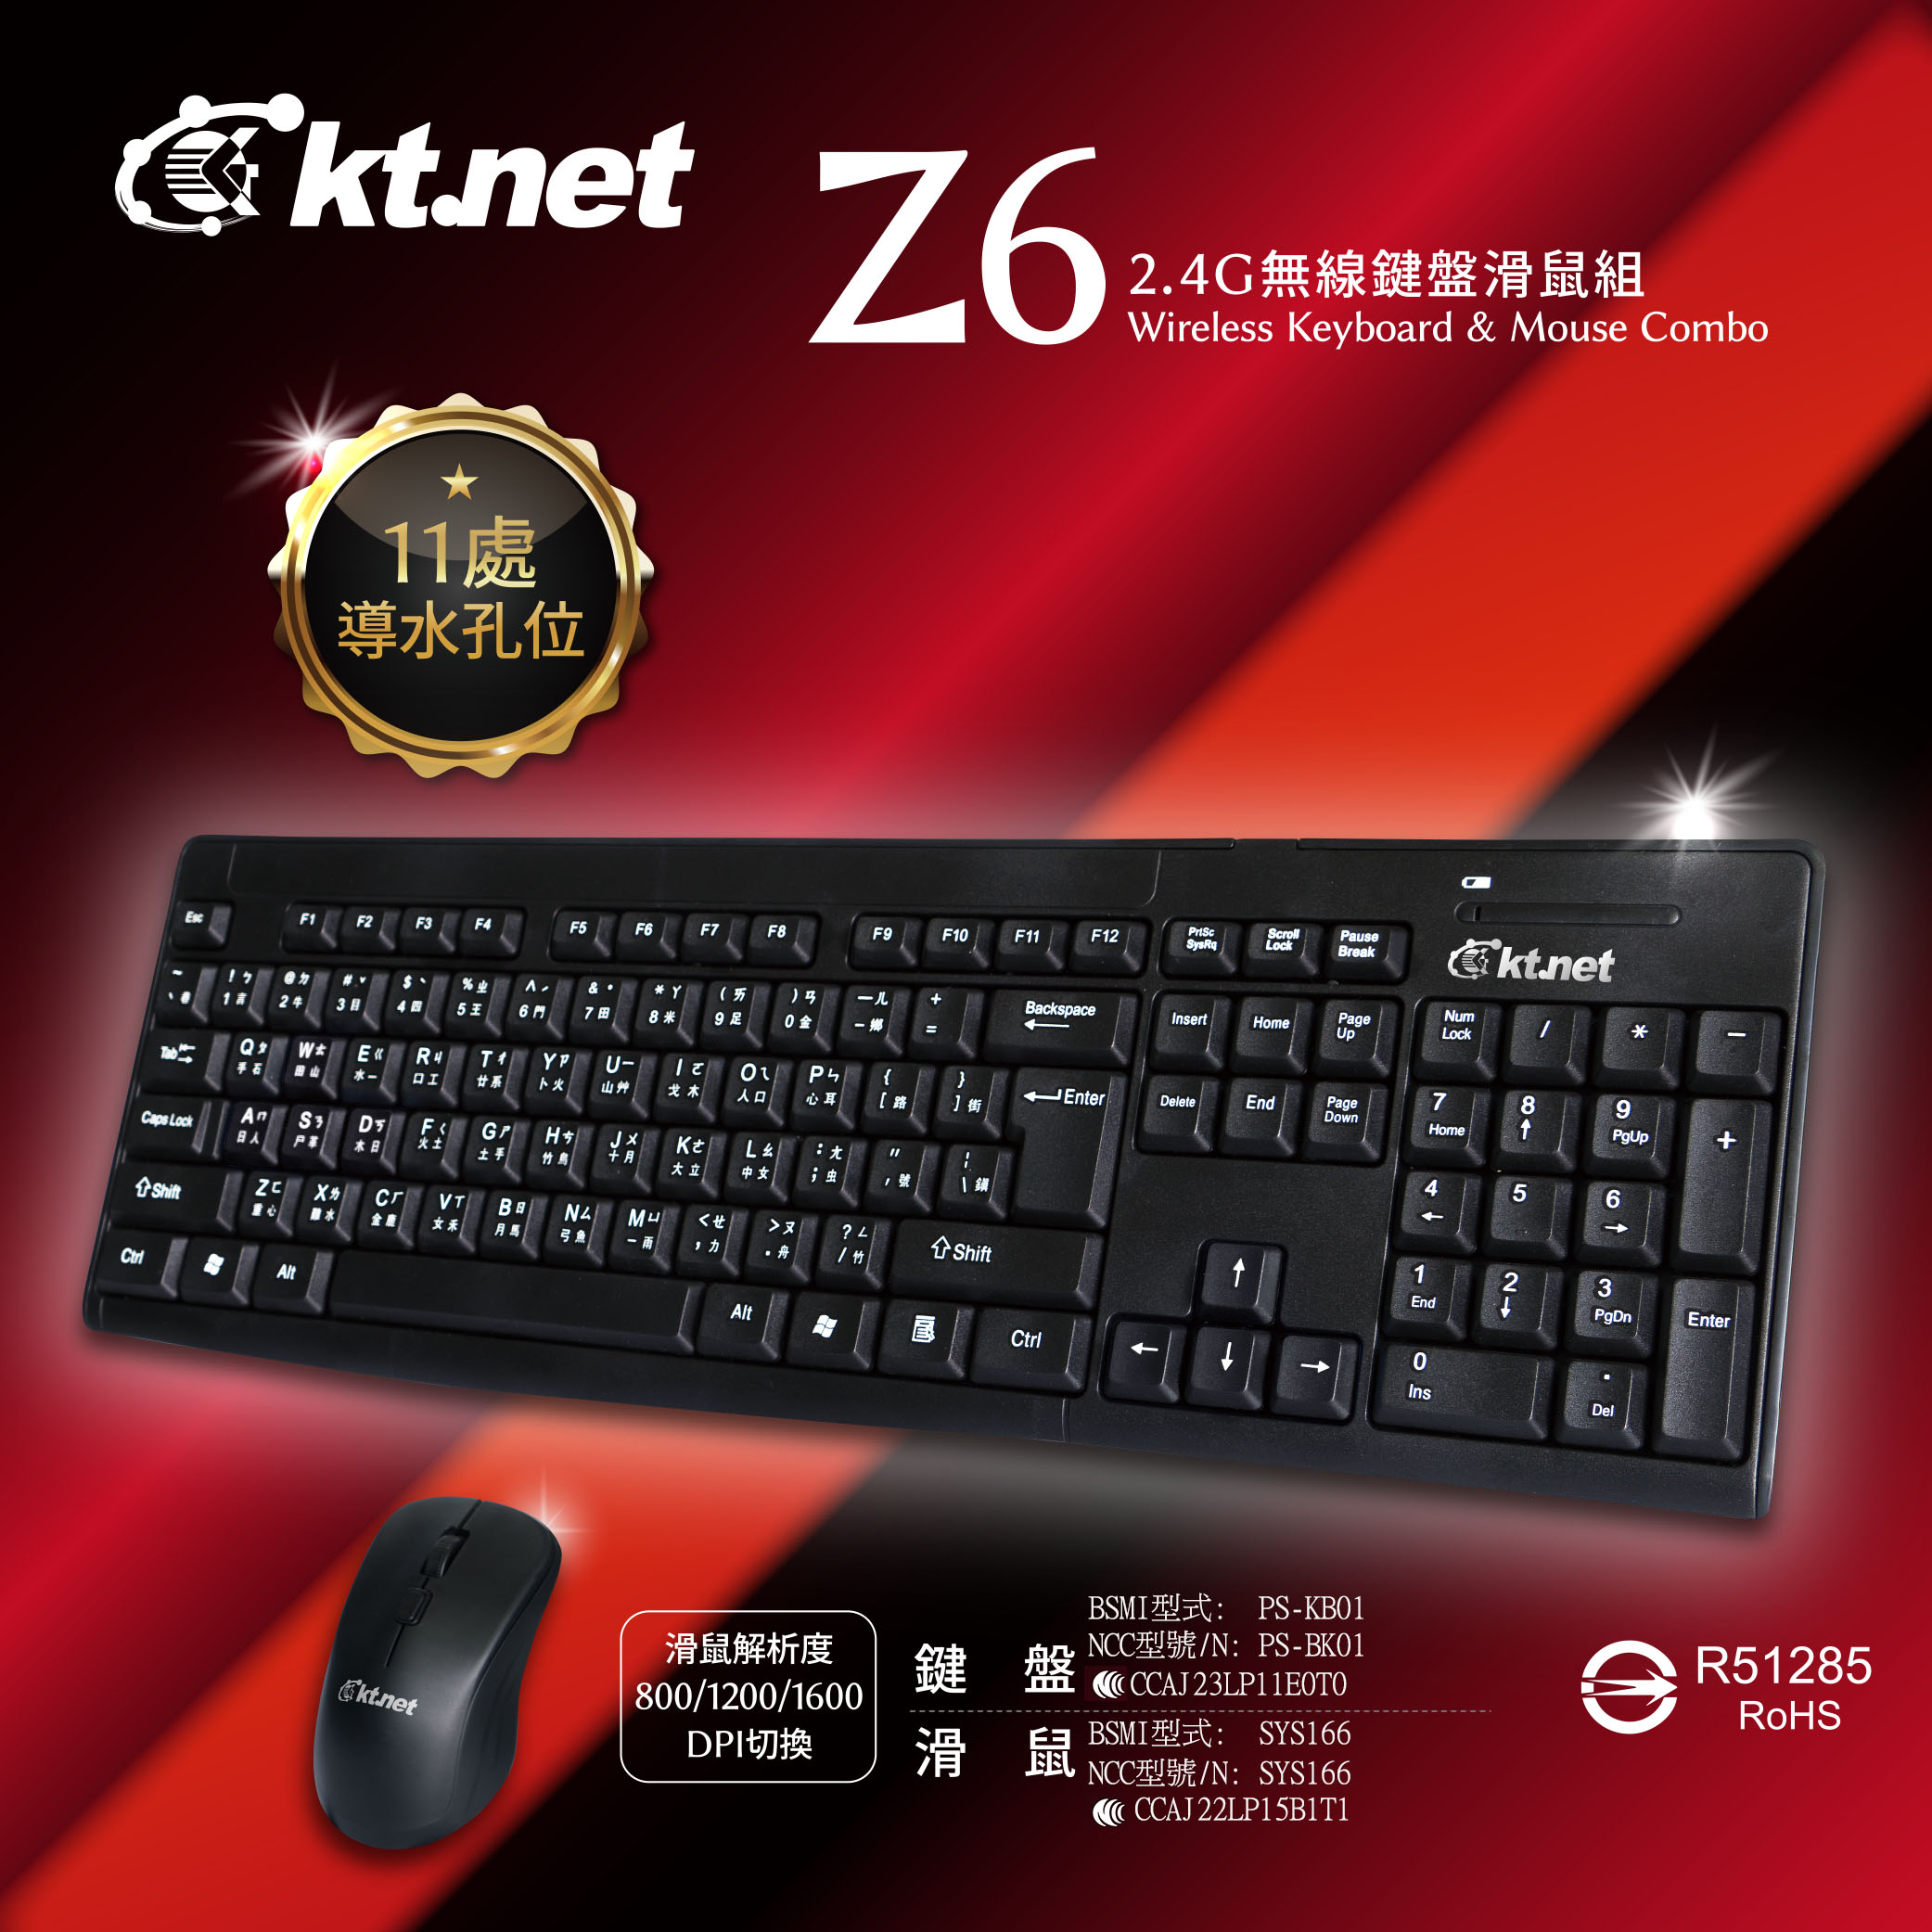 Z6 2.4G無線鍵盤滑鼠組